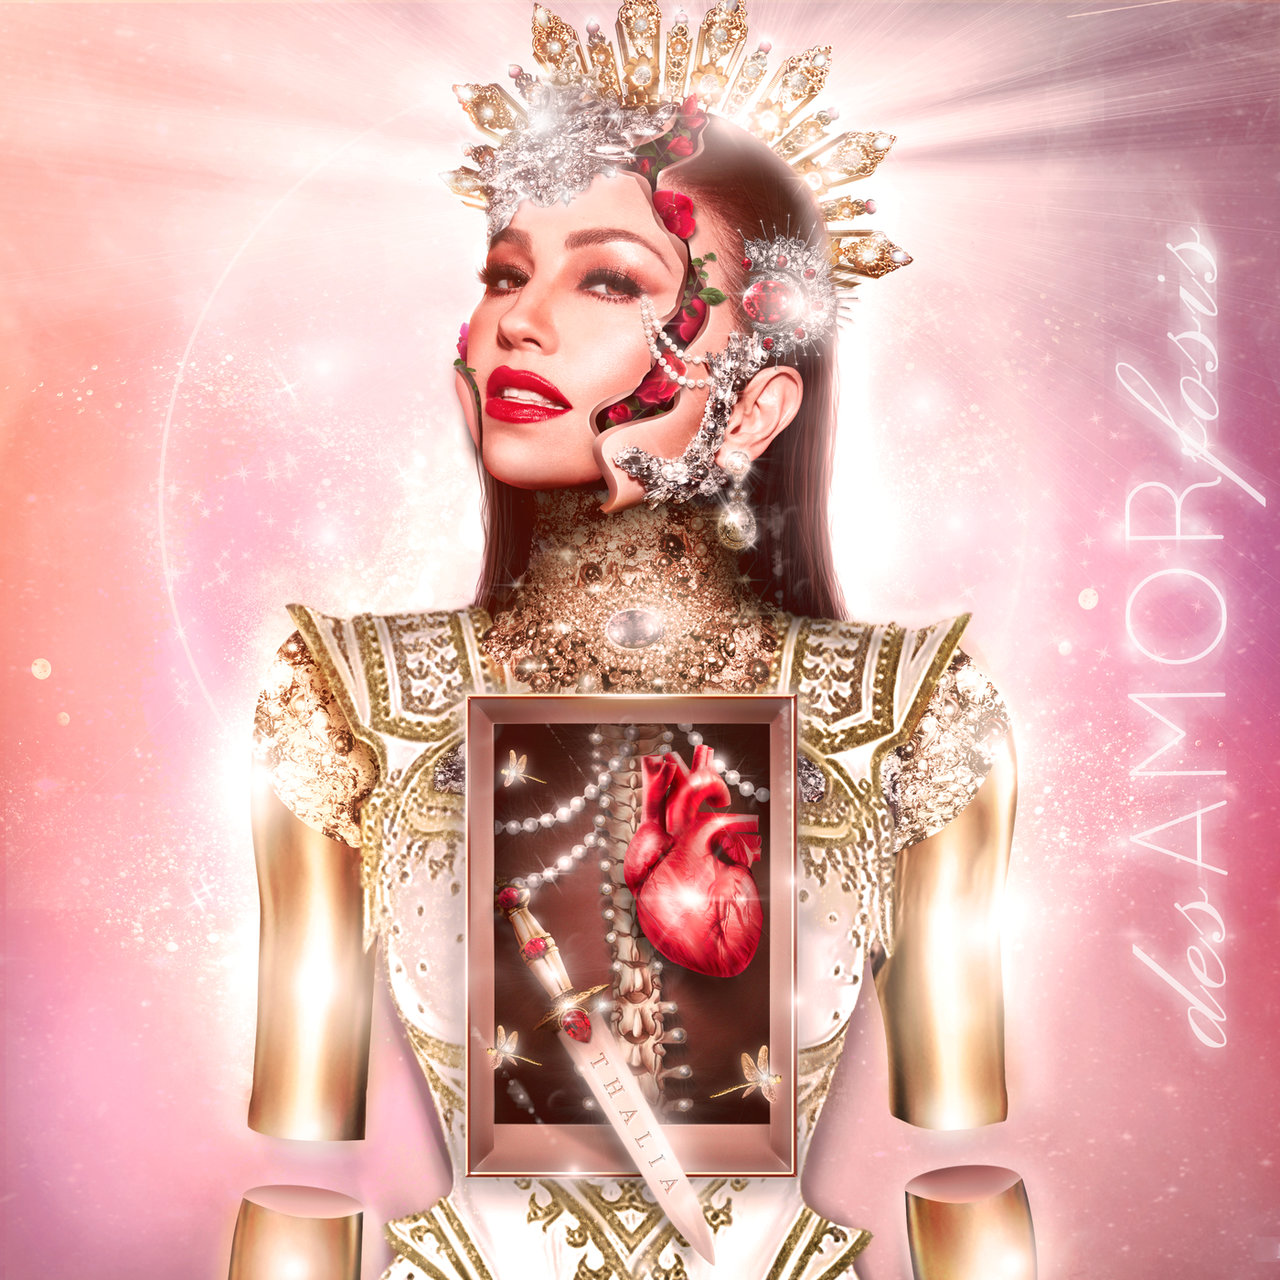 Thalía desAMORfosis cover artwork